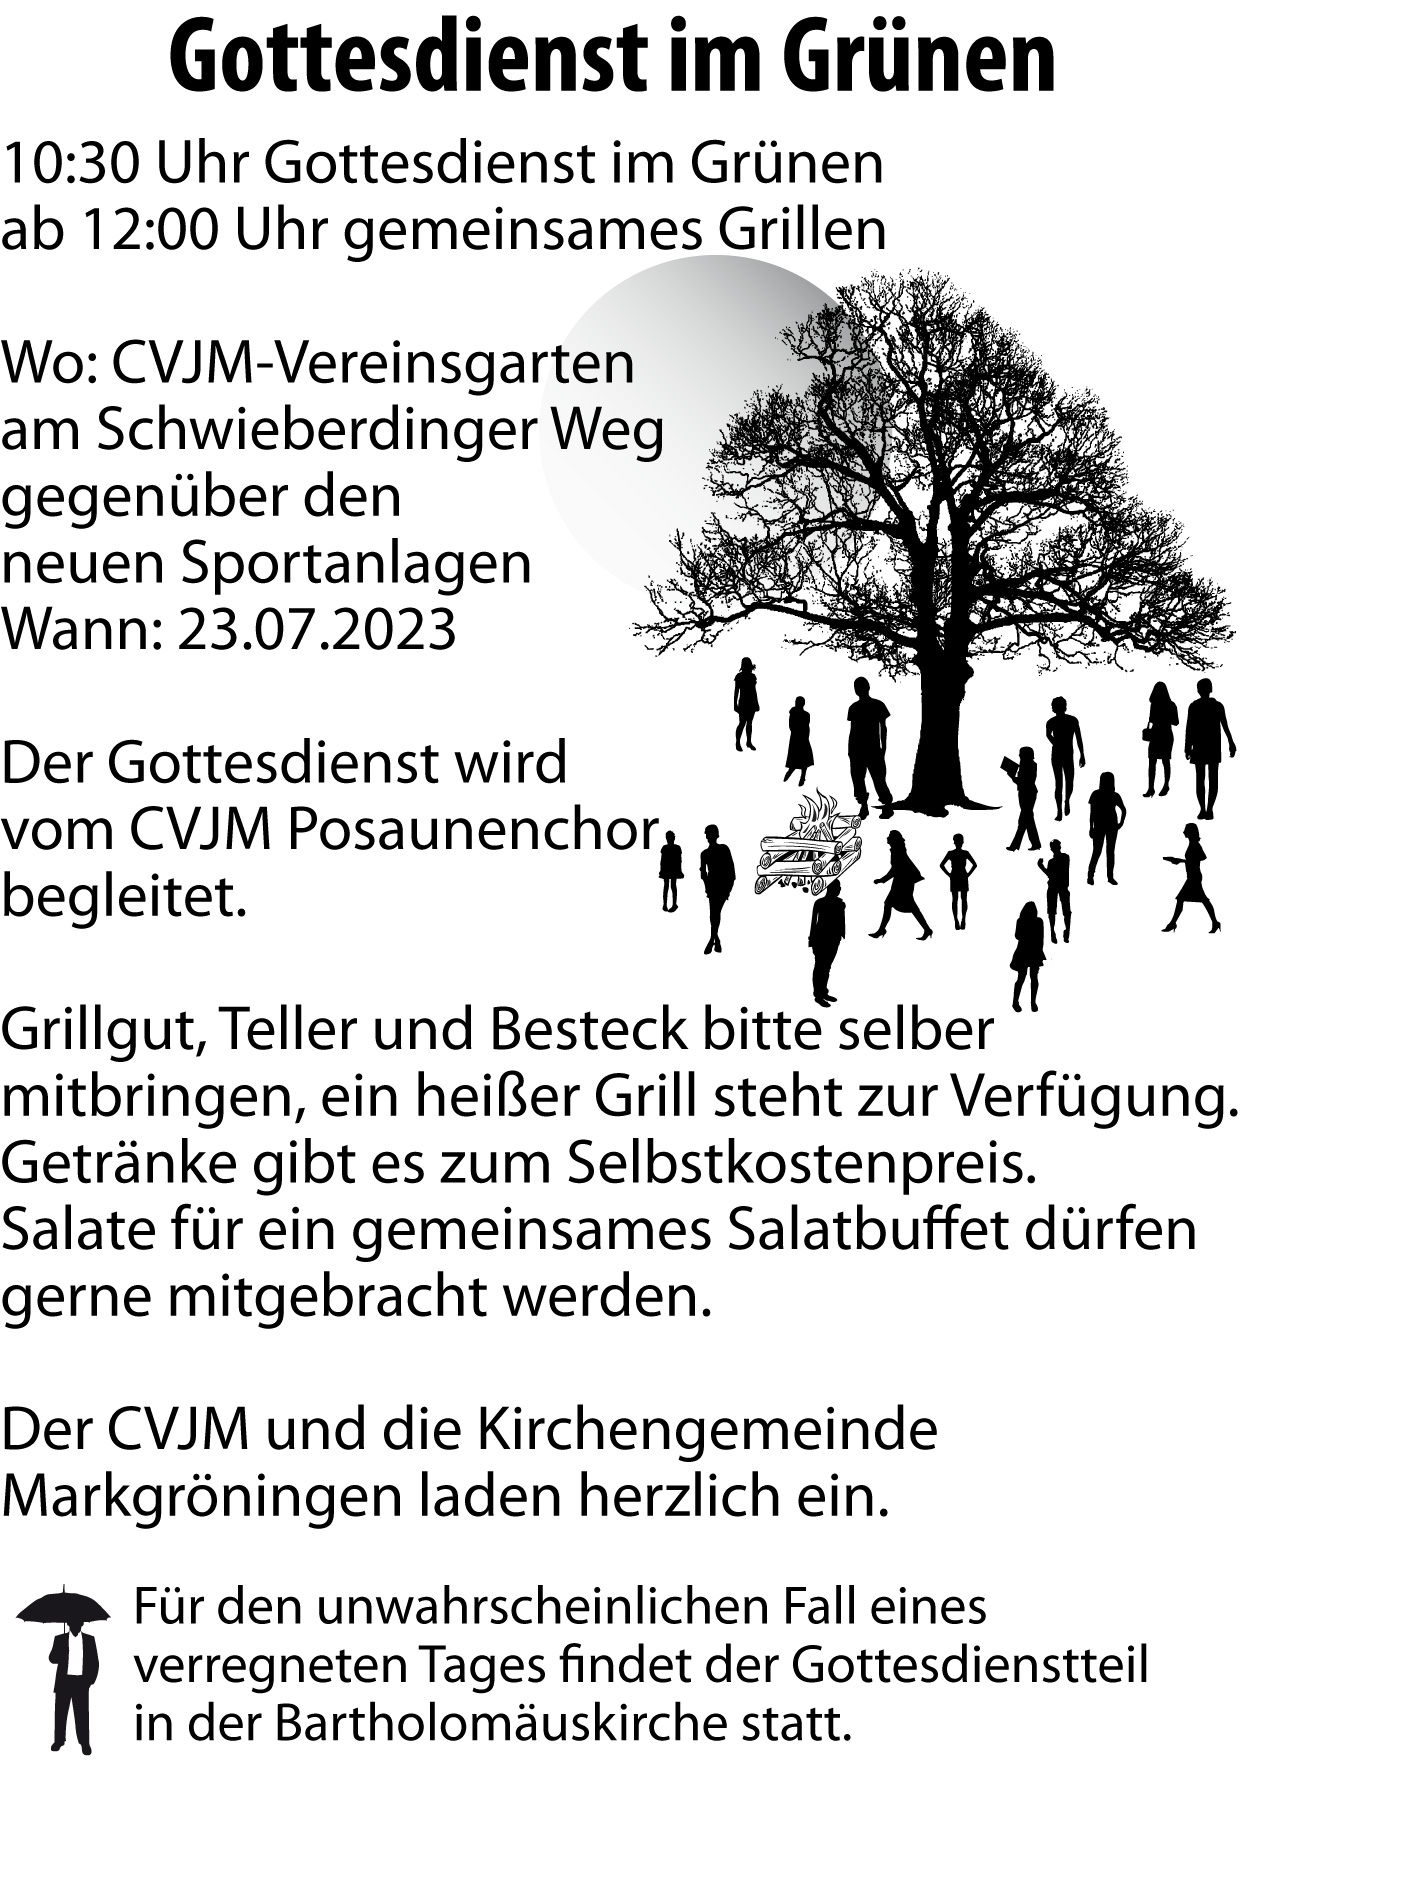 Einladung-CVJM-Garten-Kircheimgruenen-2023-v01